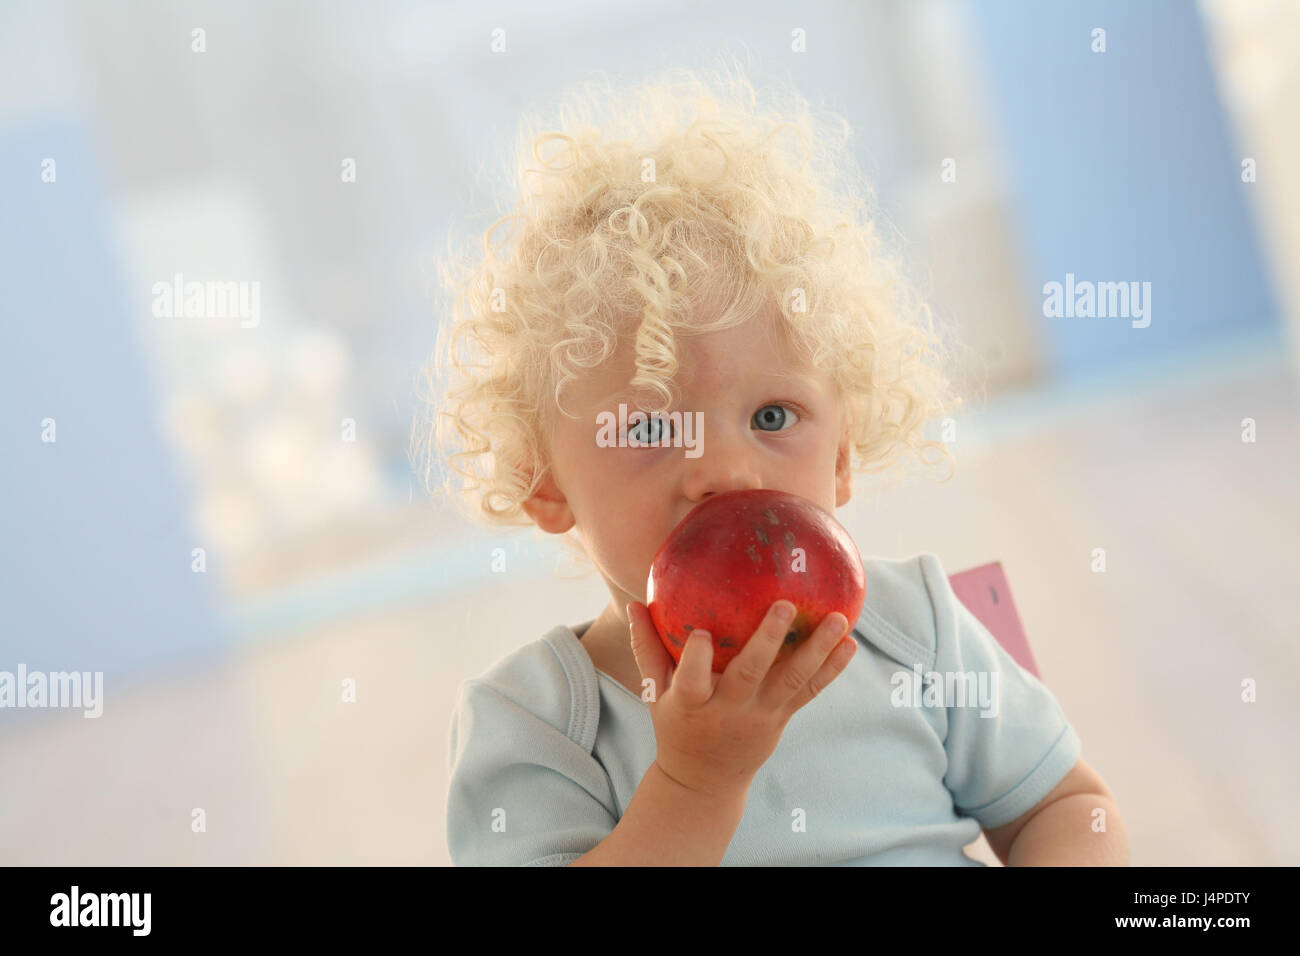 Infant, apple, eat, portrait, Stock Photo